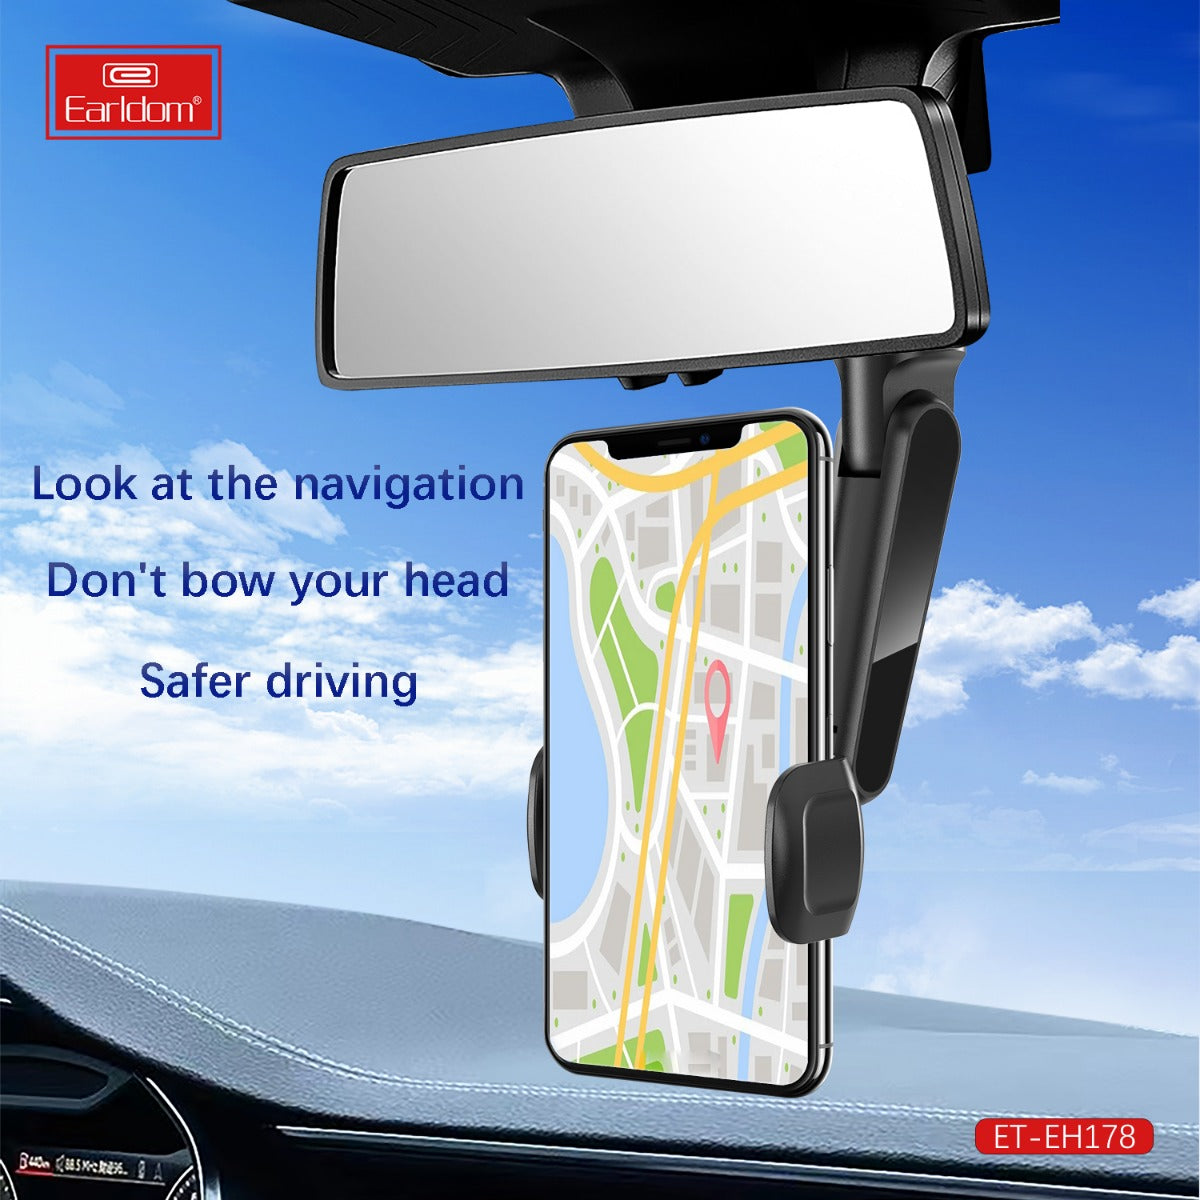 Earldom Car Rear View Mirror Phone Holder, Car Phone Holder Rear View Mirror Mount